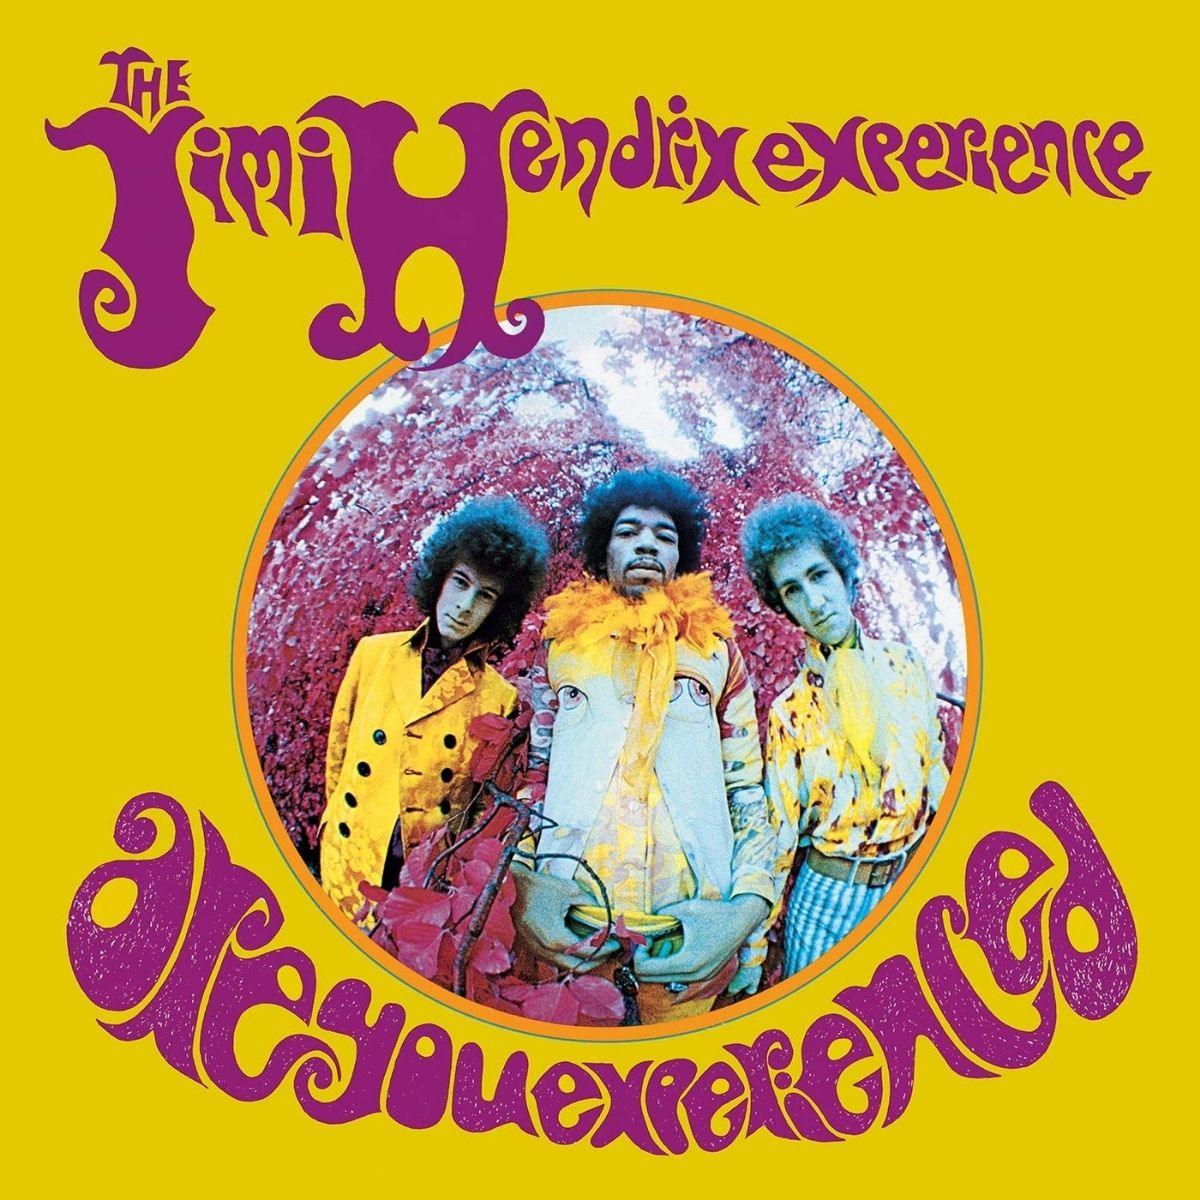 Cover von Jimi Hendrix' Album Are You Experience (1967)